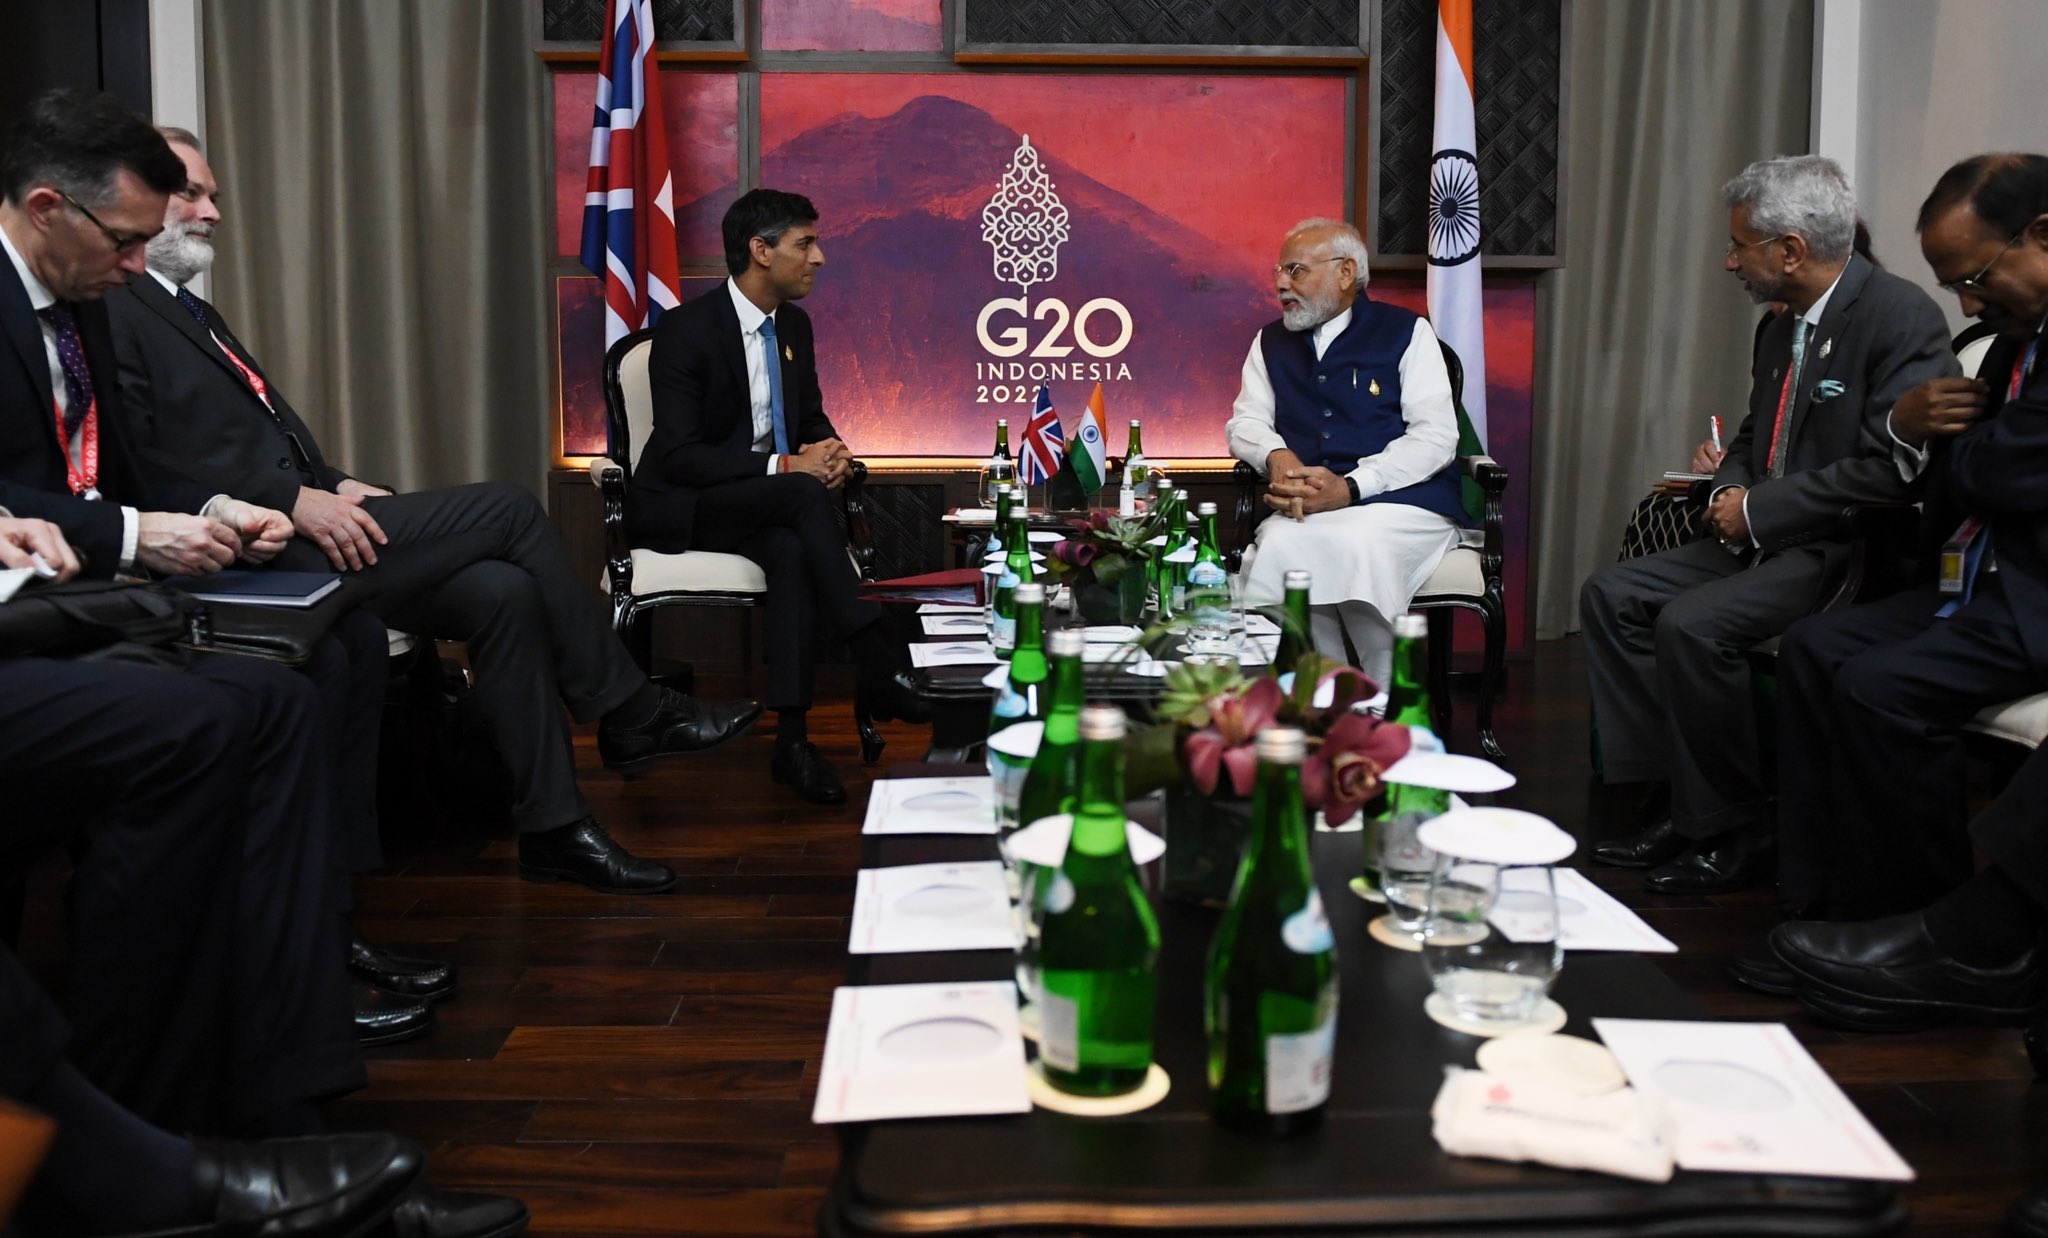 g20-sumit-declaration